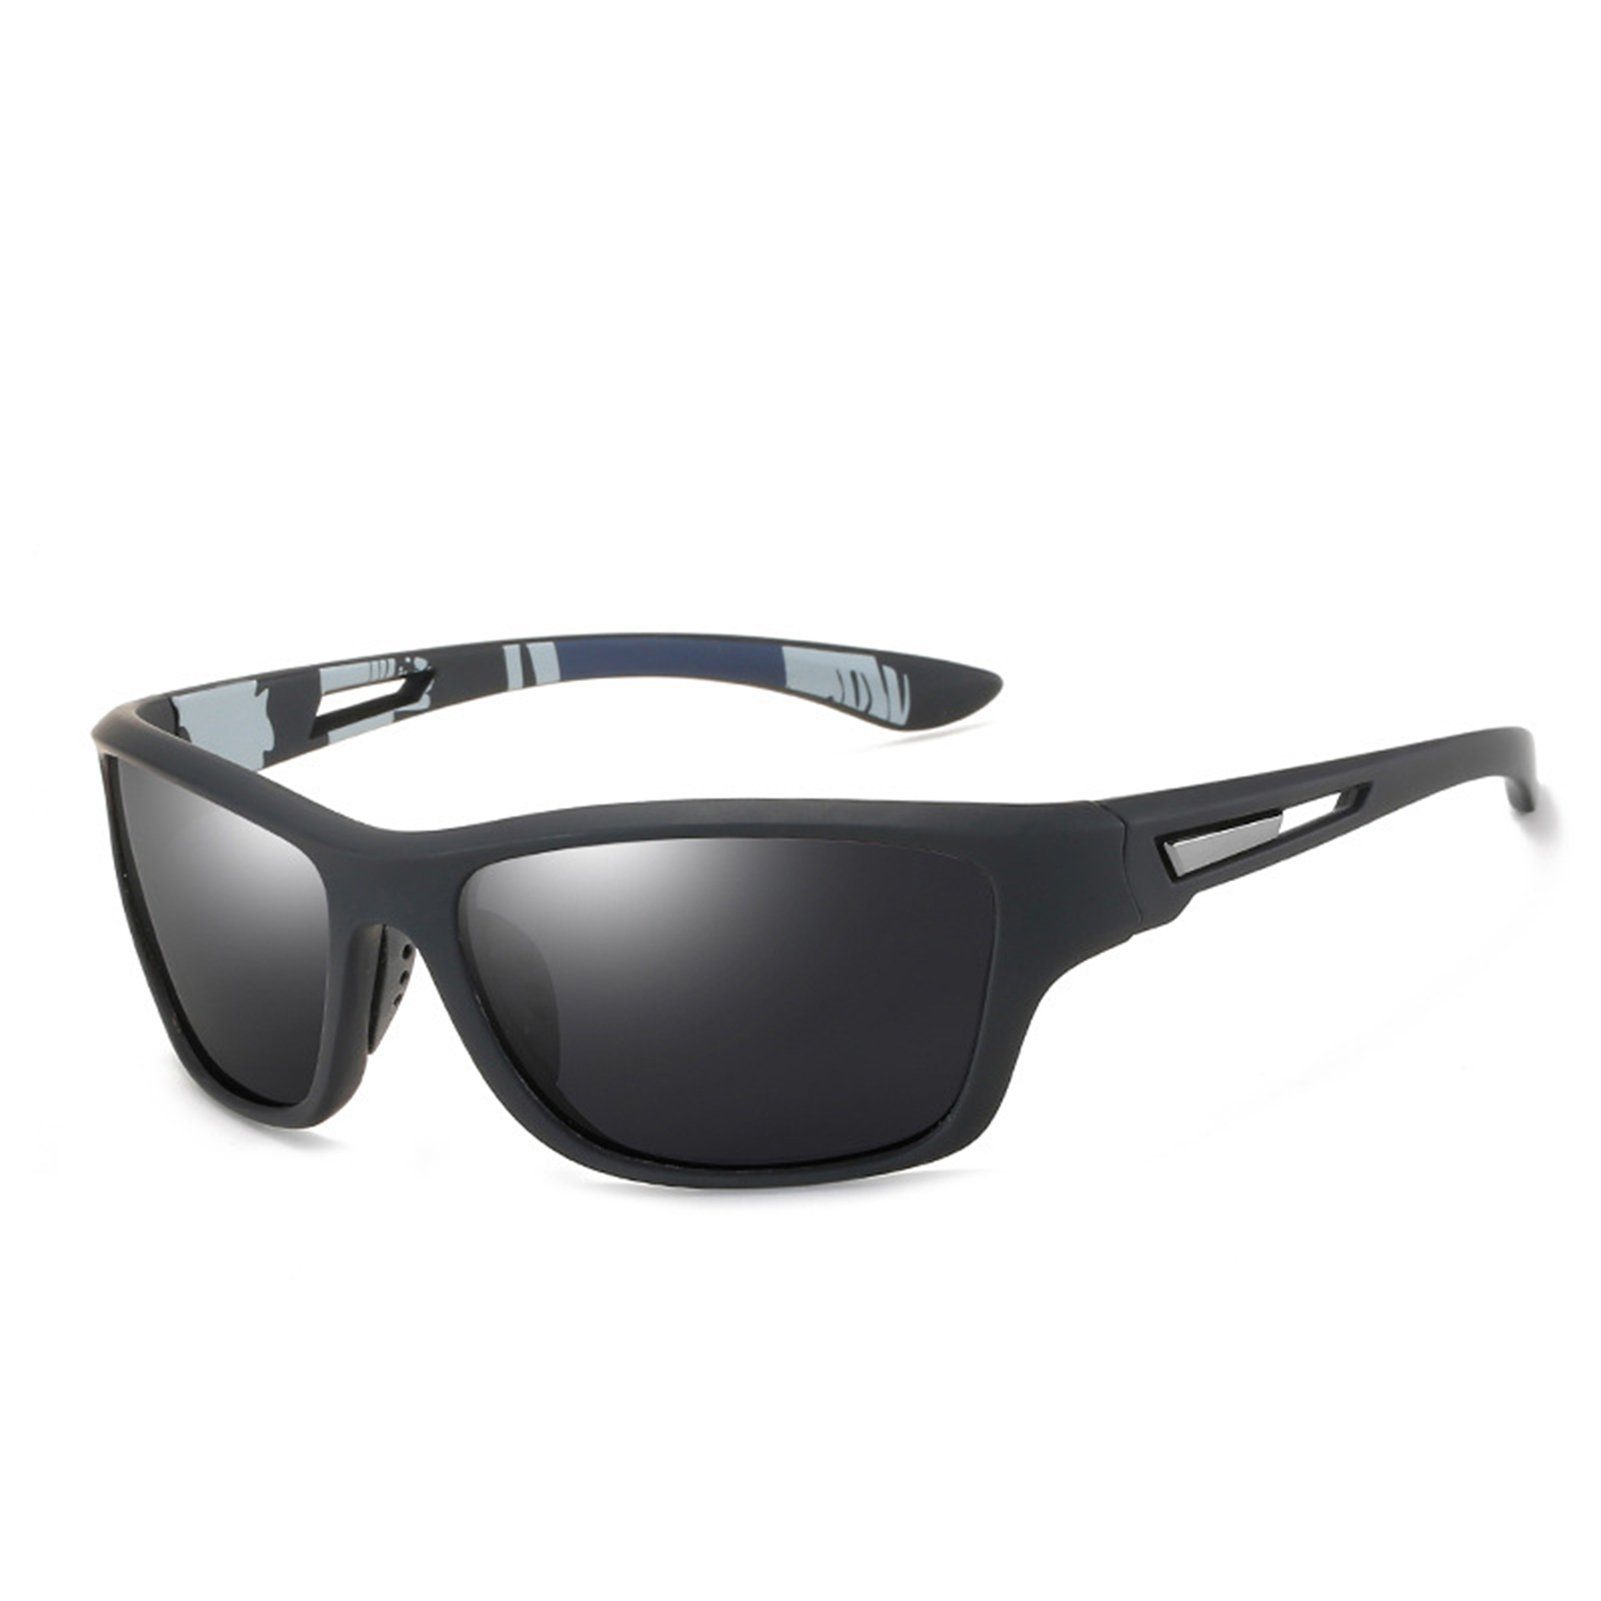 Blusmart Fahrradbrille Sportliche Polarisierte Sonnenbrille Für Männer Und Frauen black gray frame and black gray sheet